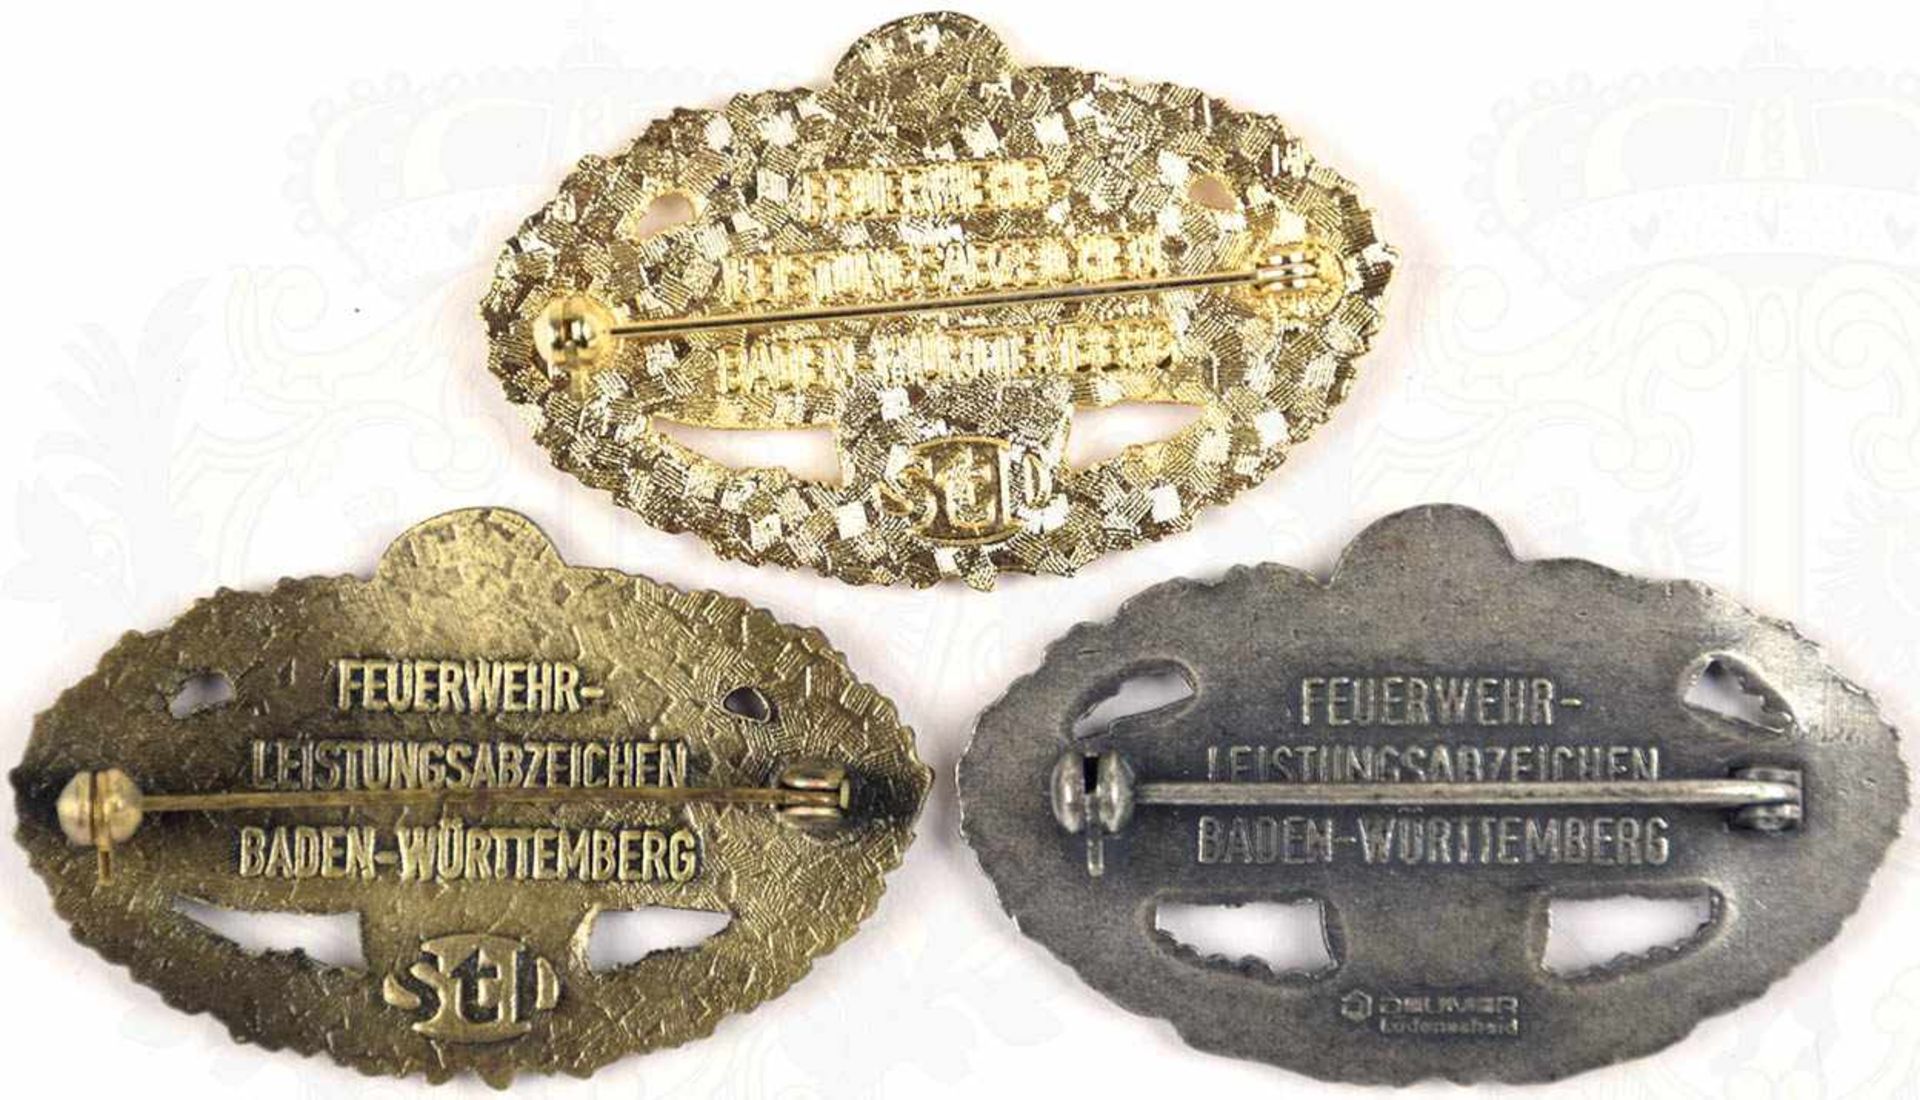 3 FEUERWEHR-LEISTUNGSABZEICHEN BADEN-WÜRTTEMBERG, Bronze, Silber u. Gold, Gold m. Miniatur - Bild 2 aus 2